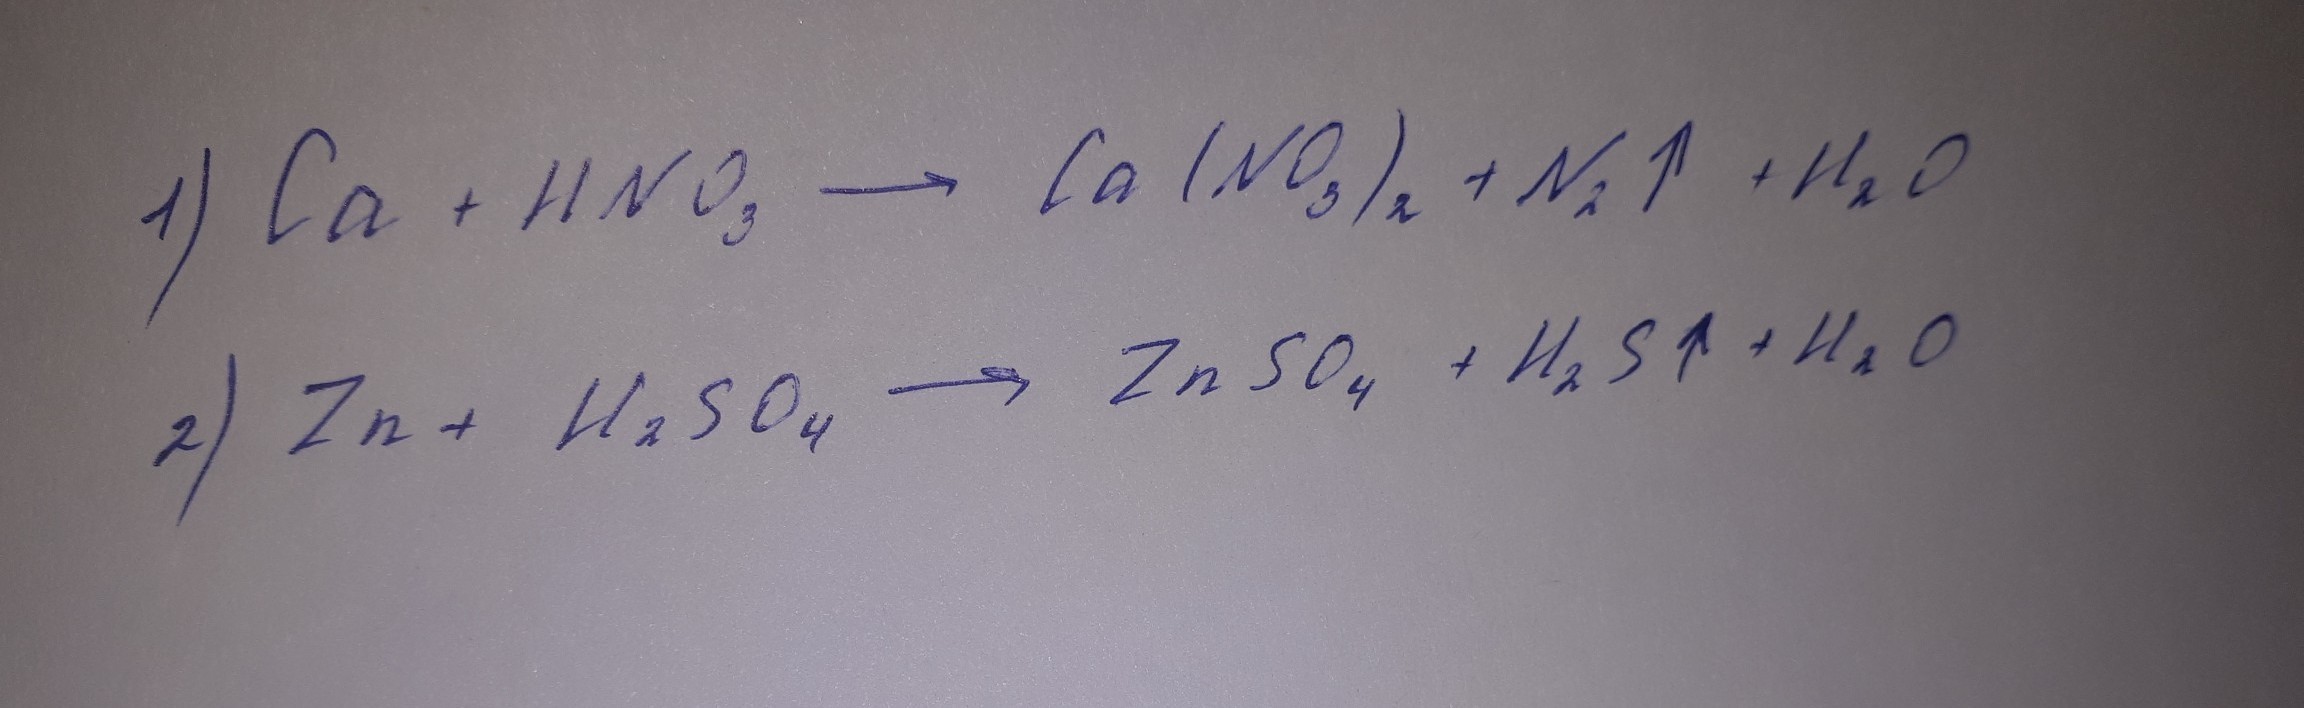 Zn h2o окислительно восстановительная реакция